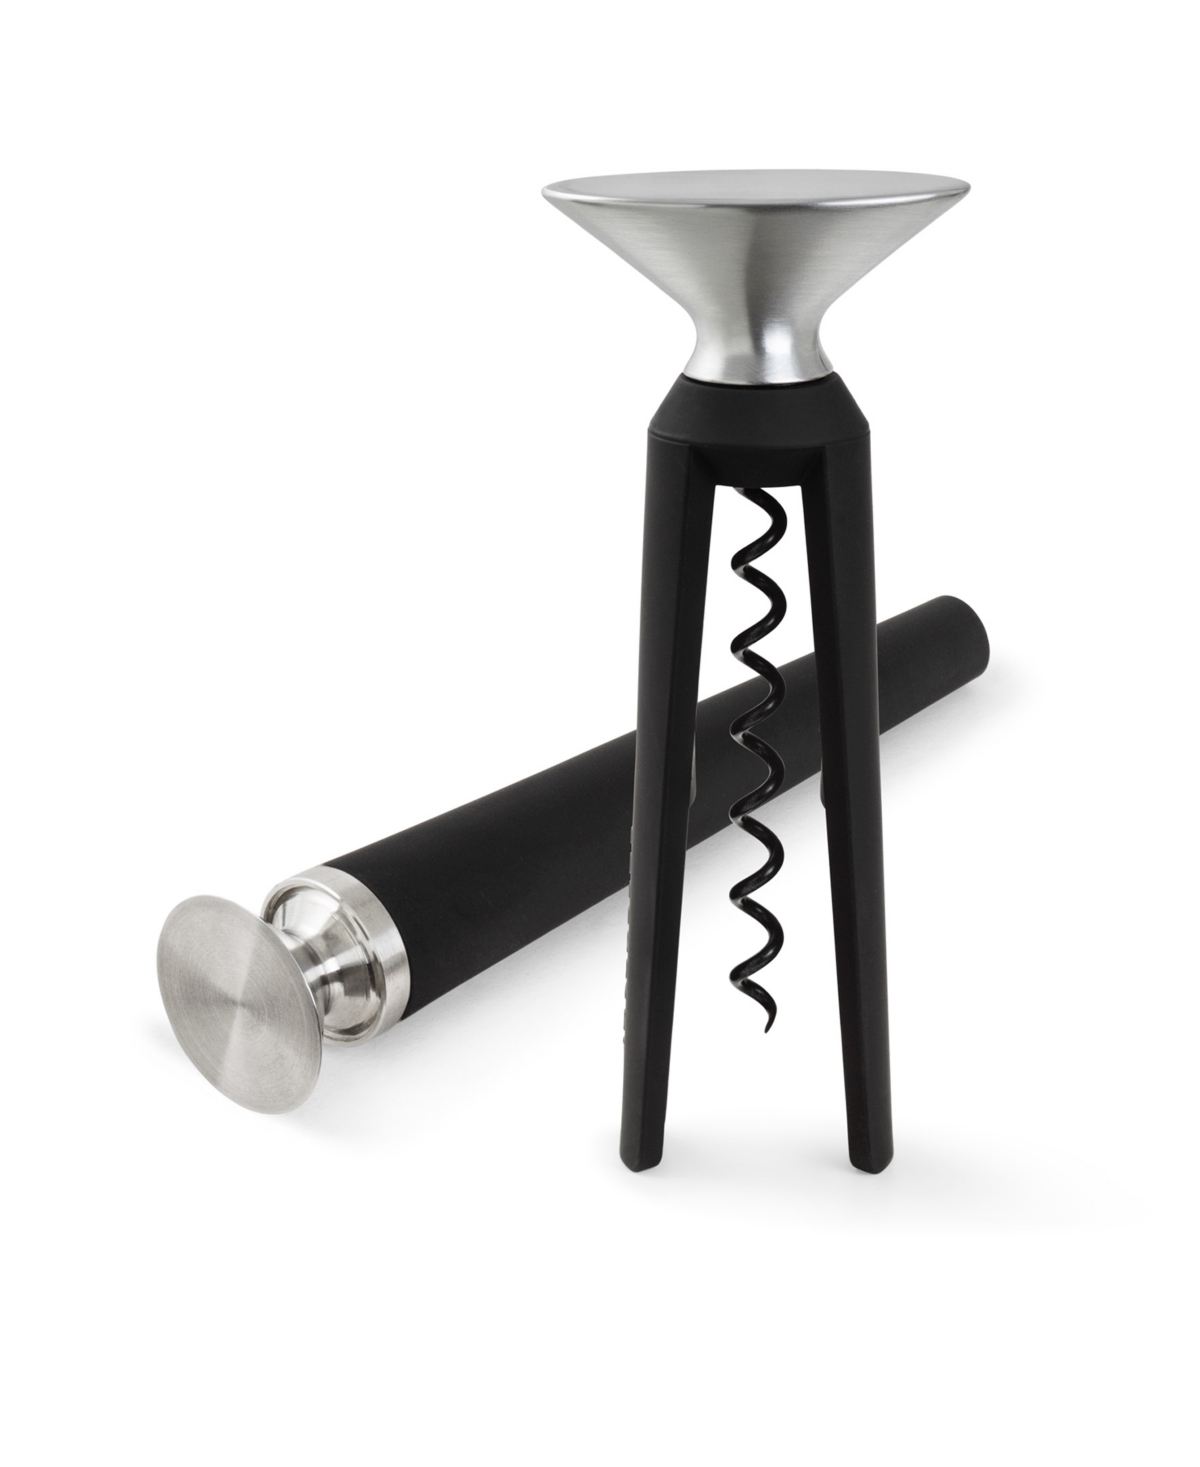 Rosendahl Bottle Opener And Corkscrew Set In Black,stainless Steel